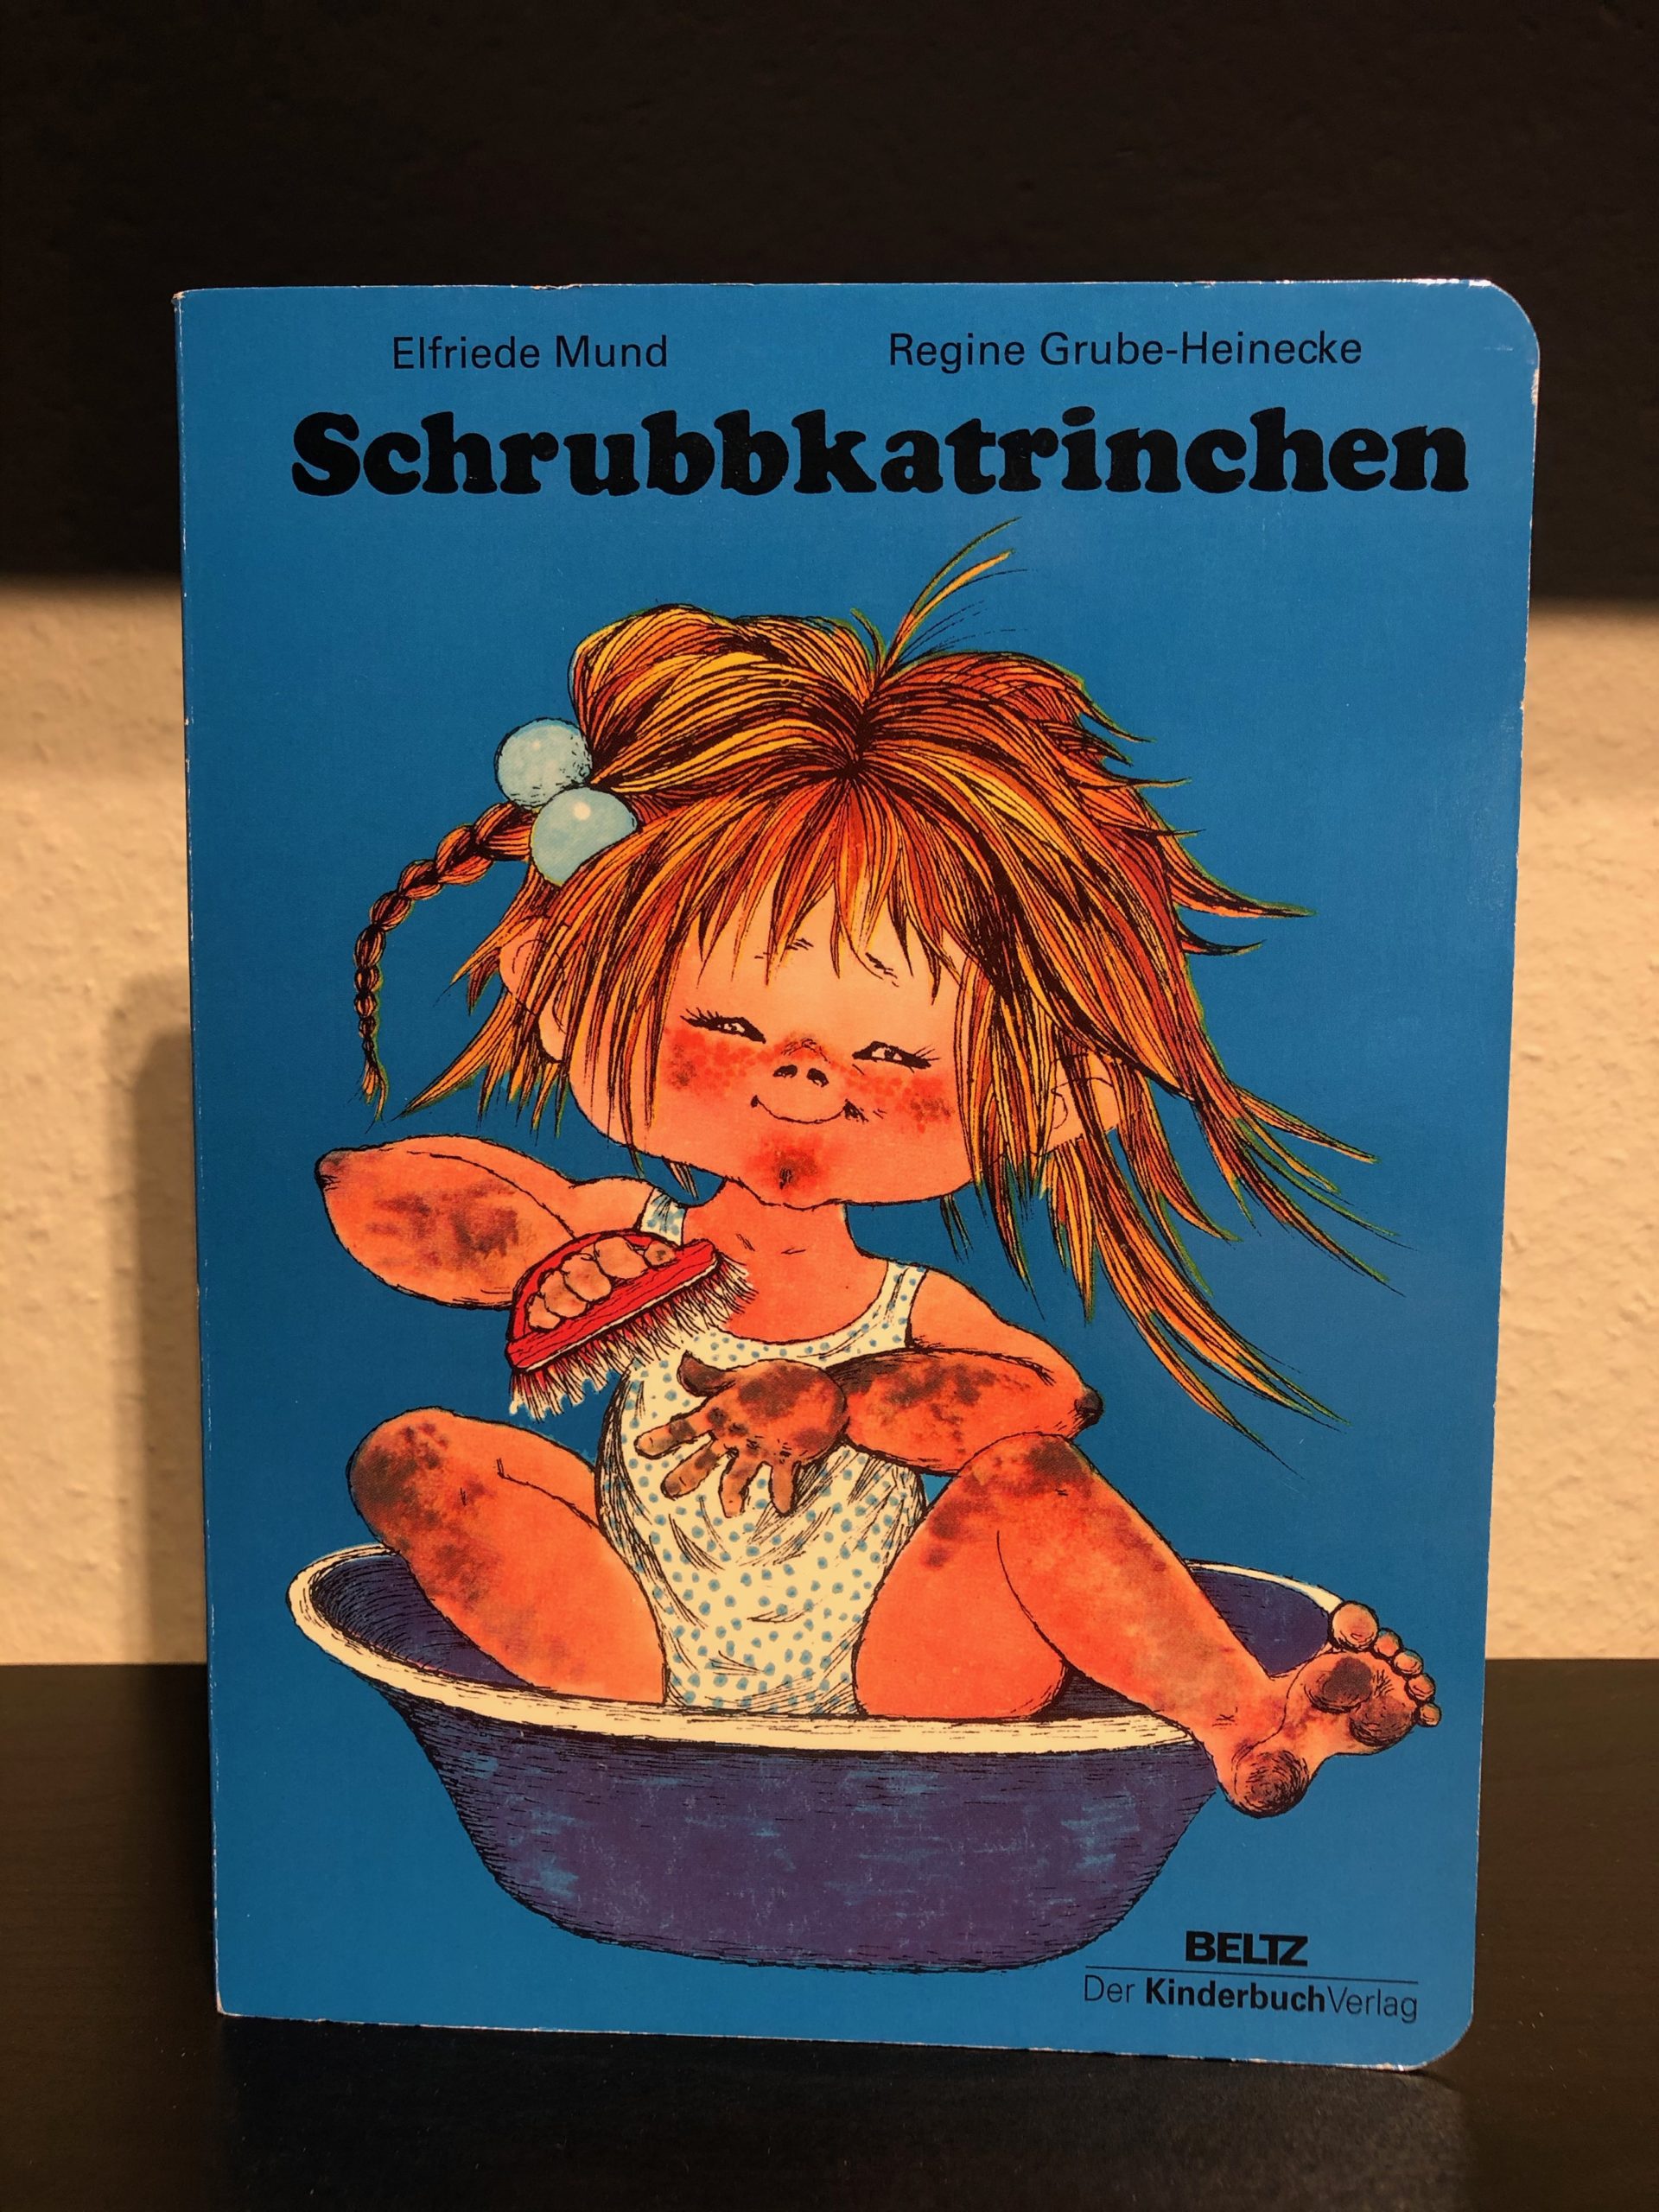 Schrubbkatrinchen - Elfriede Mund & Regine Grube-Heinecke main image